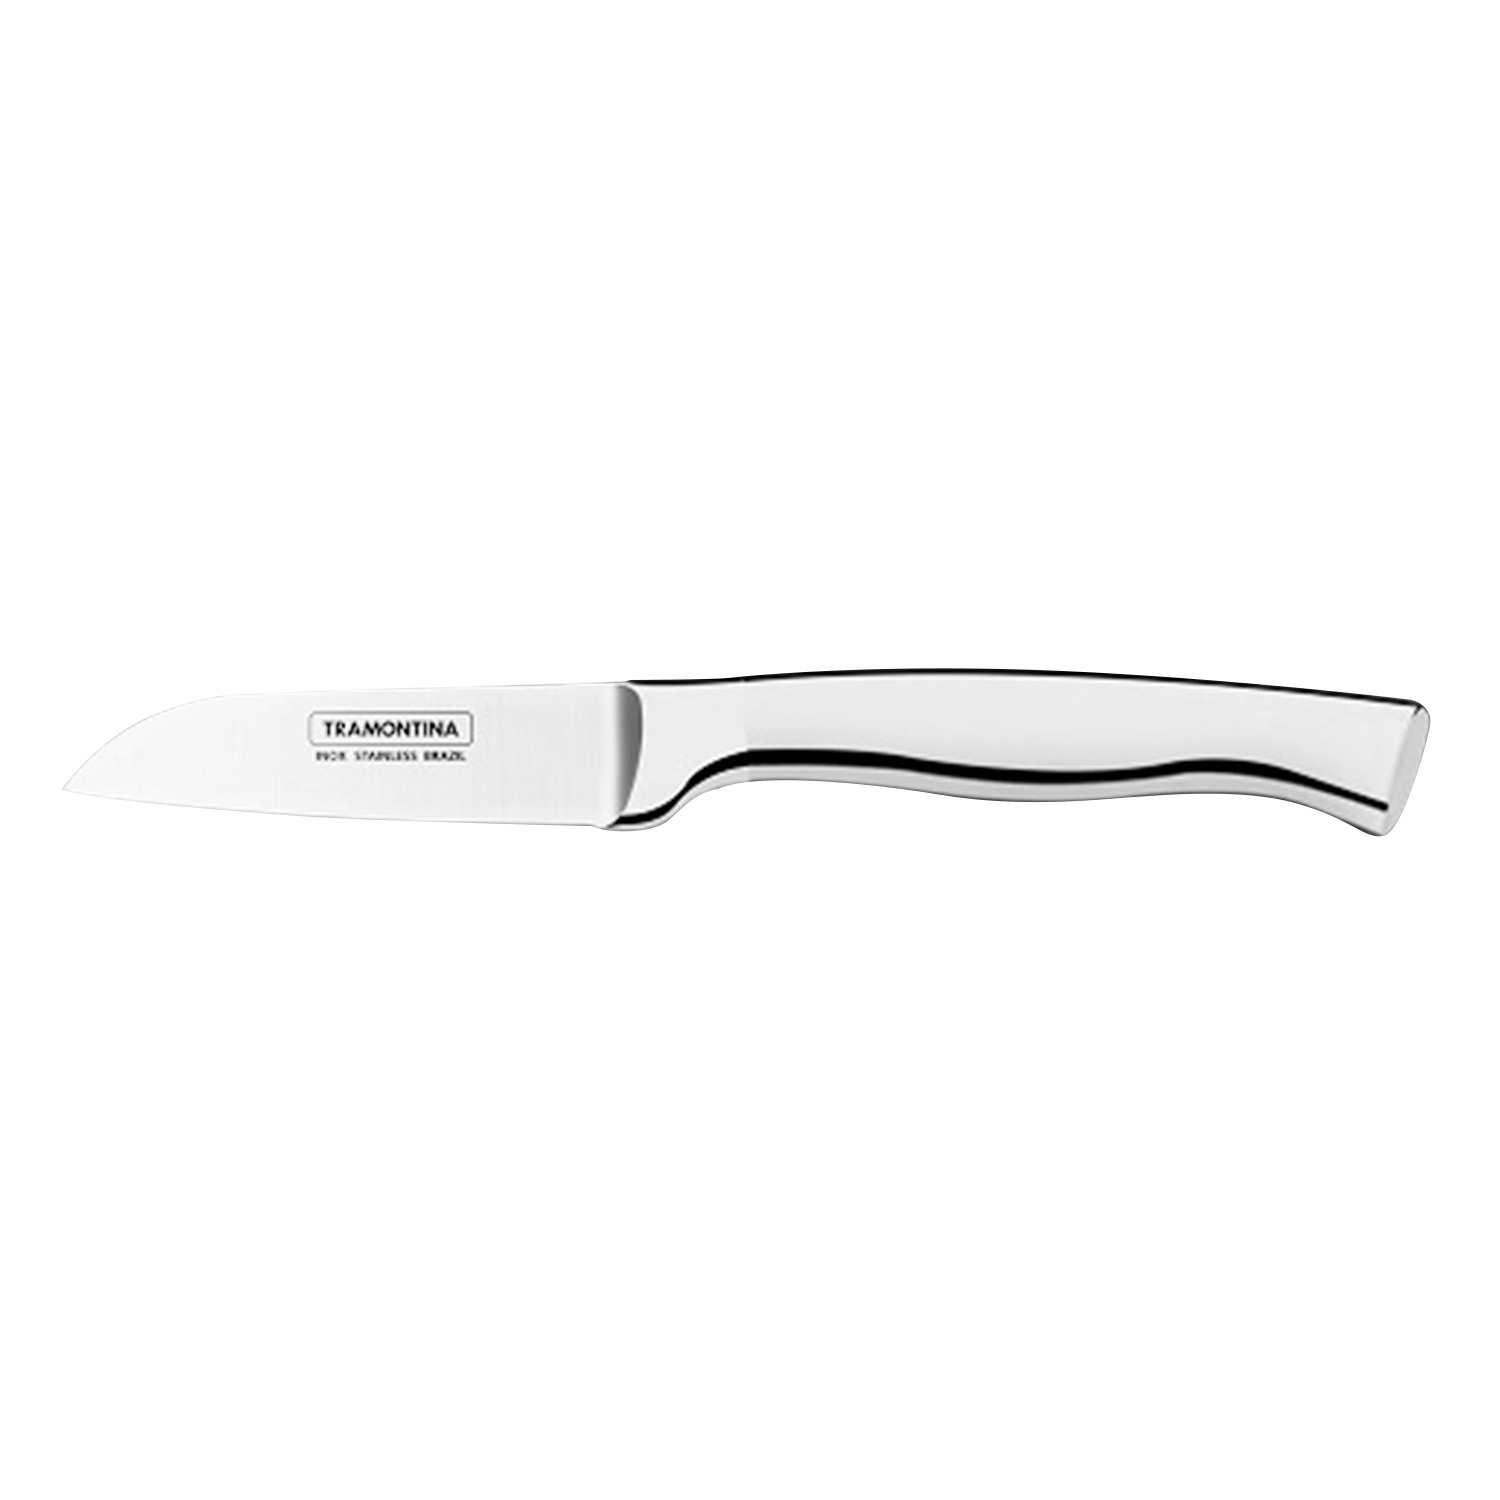 Нож Cronos 76мм/194мм для овощей